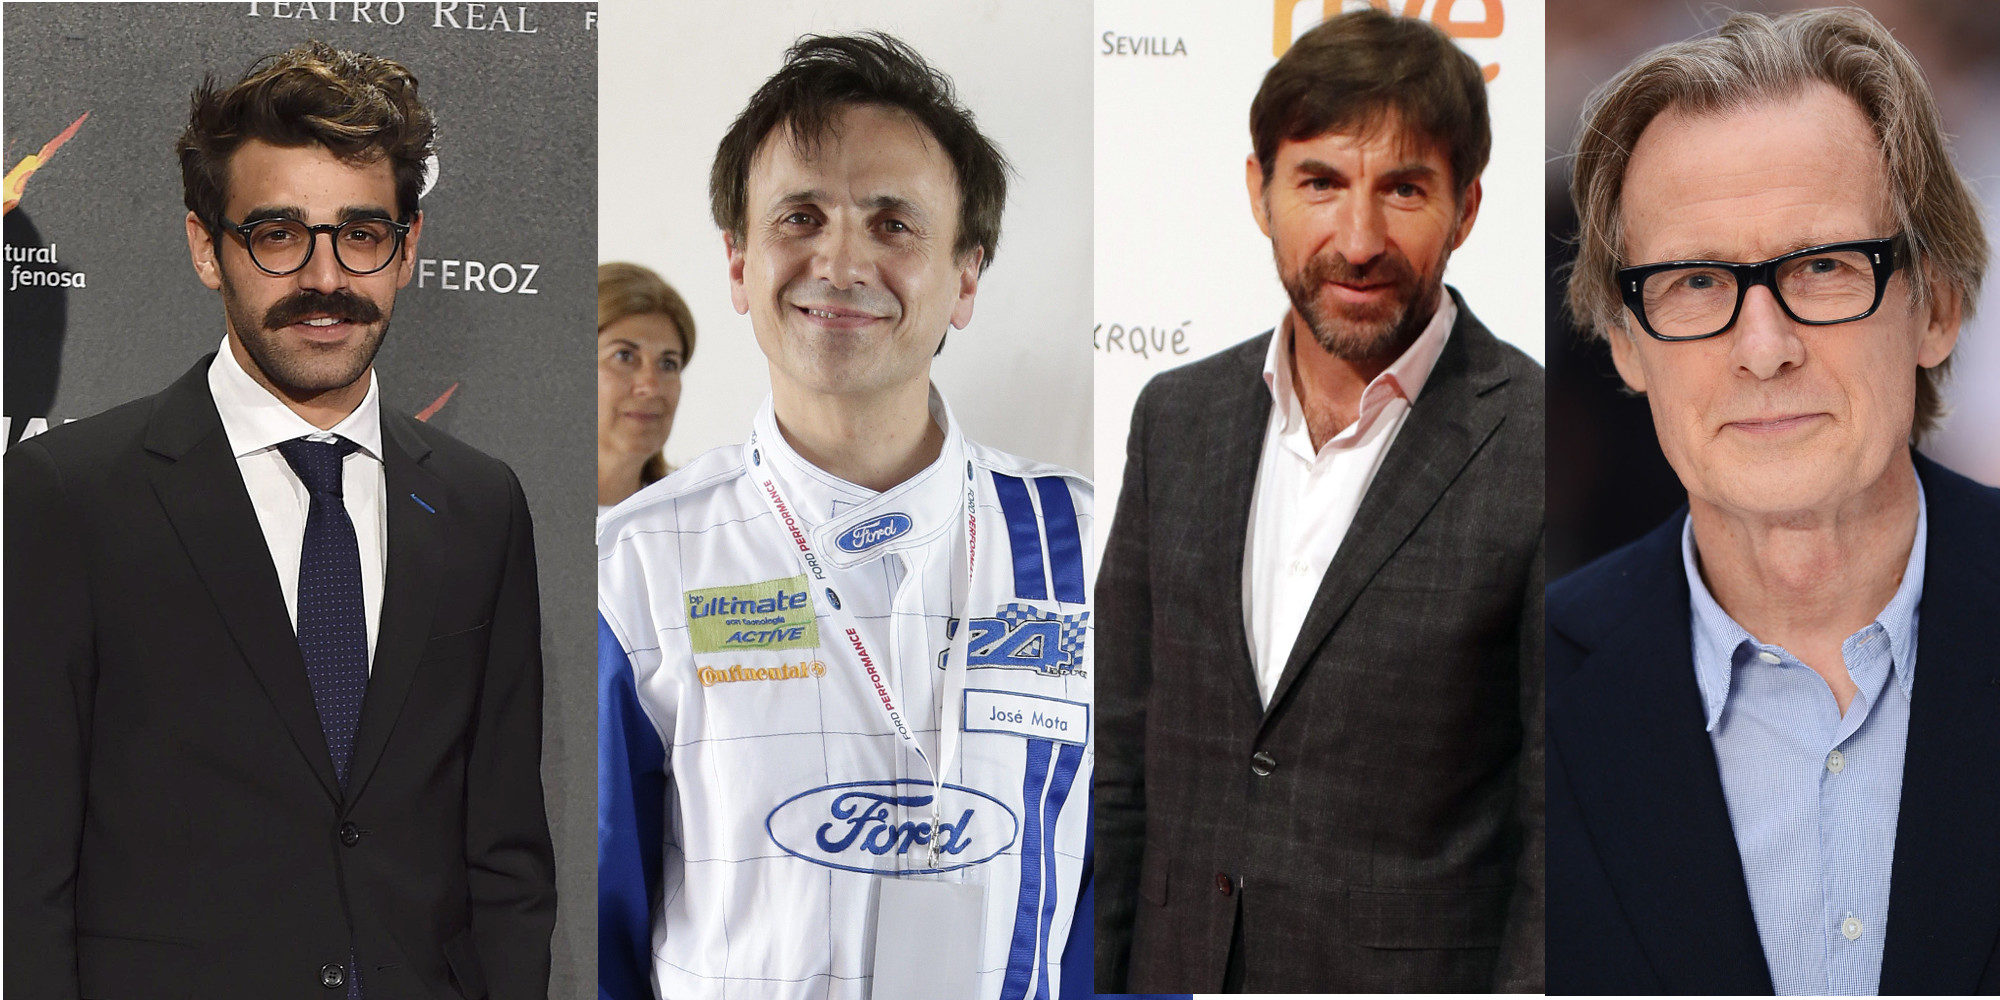 José Mota, Antonio de la Torre, David Verdaguer y Bill Nighy lucharán por el Goya a Mejor Actor de Reparto